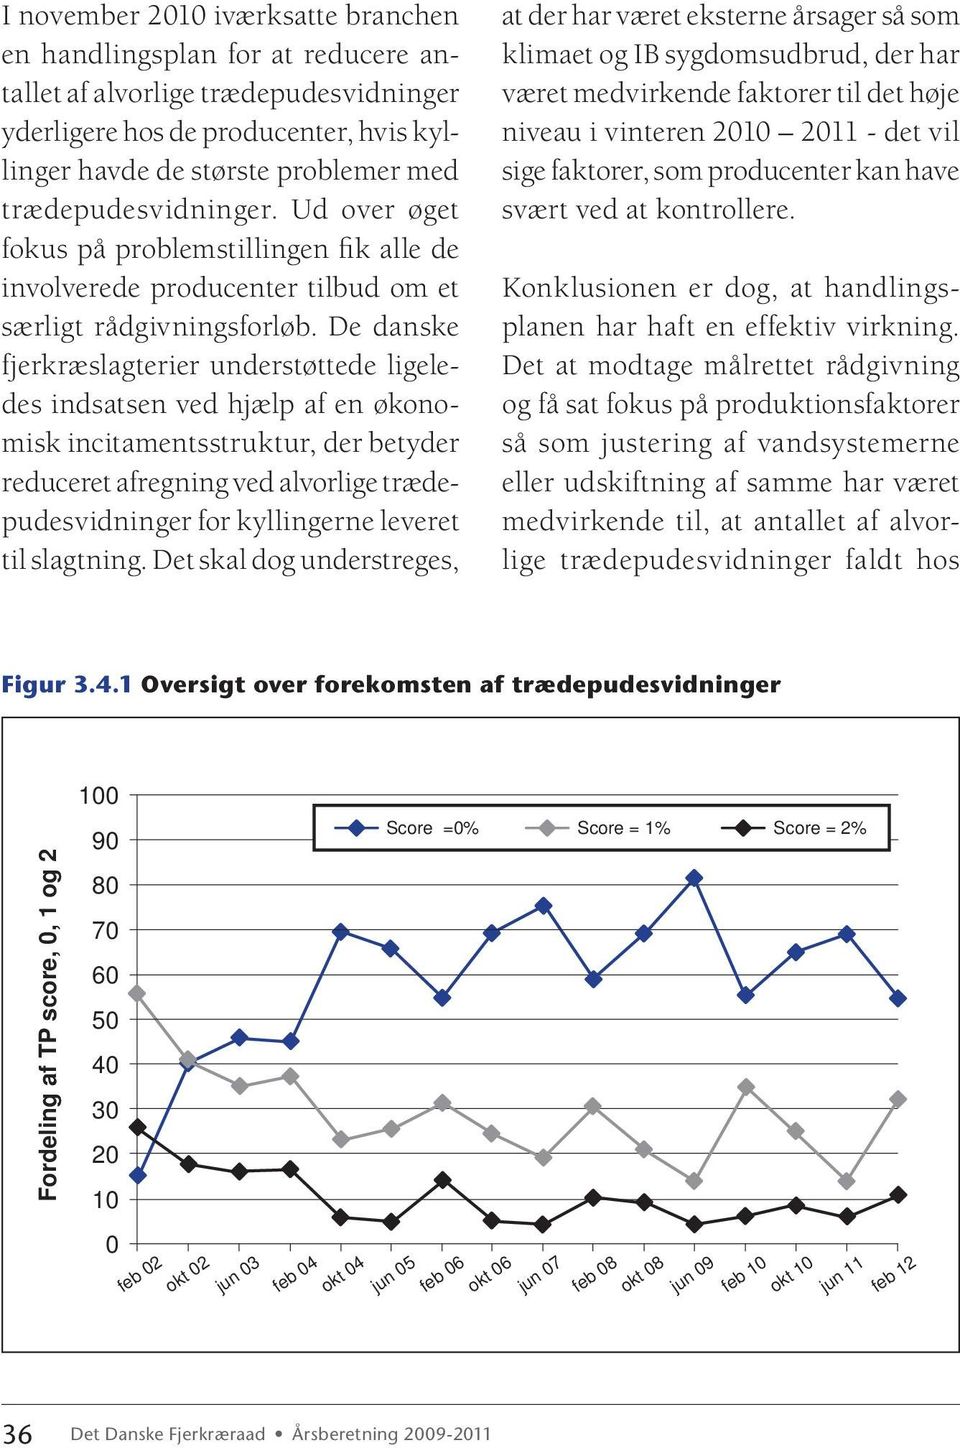 De danske fjerkræslagterier understøttede ligeledes indsatsen ved hjælp af en økonomisk incitamentsstruktur, der betyder reduceret afregning ved alvorlige trædepudesvidninger for kyllingerne leveret